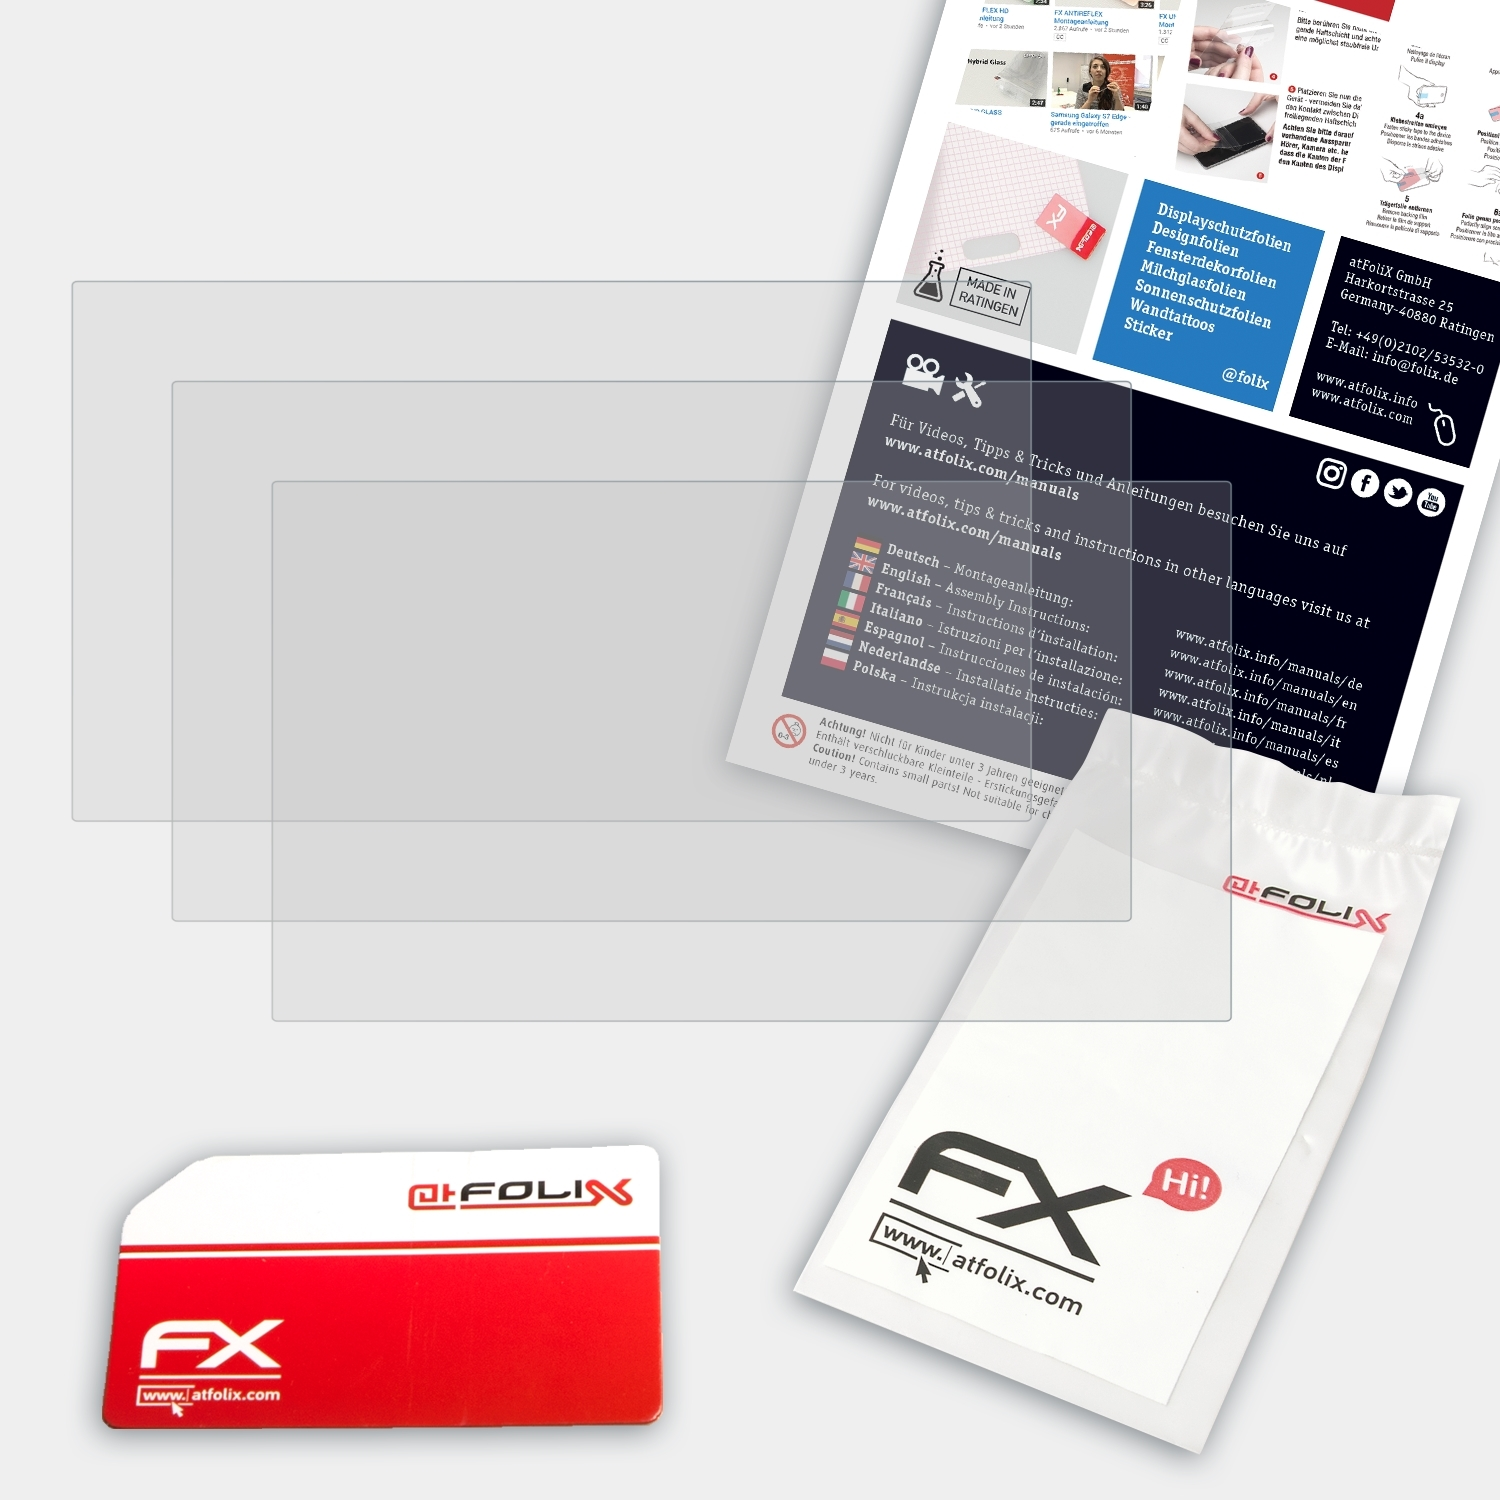 ATFOLIX 3x FX-Antireflex HDC-SD909) Displayschutz(für Panasonic